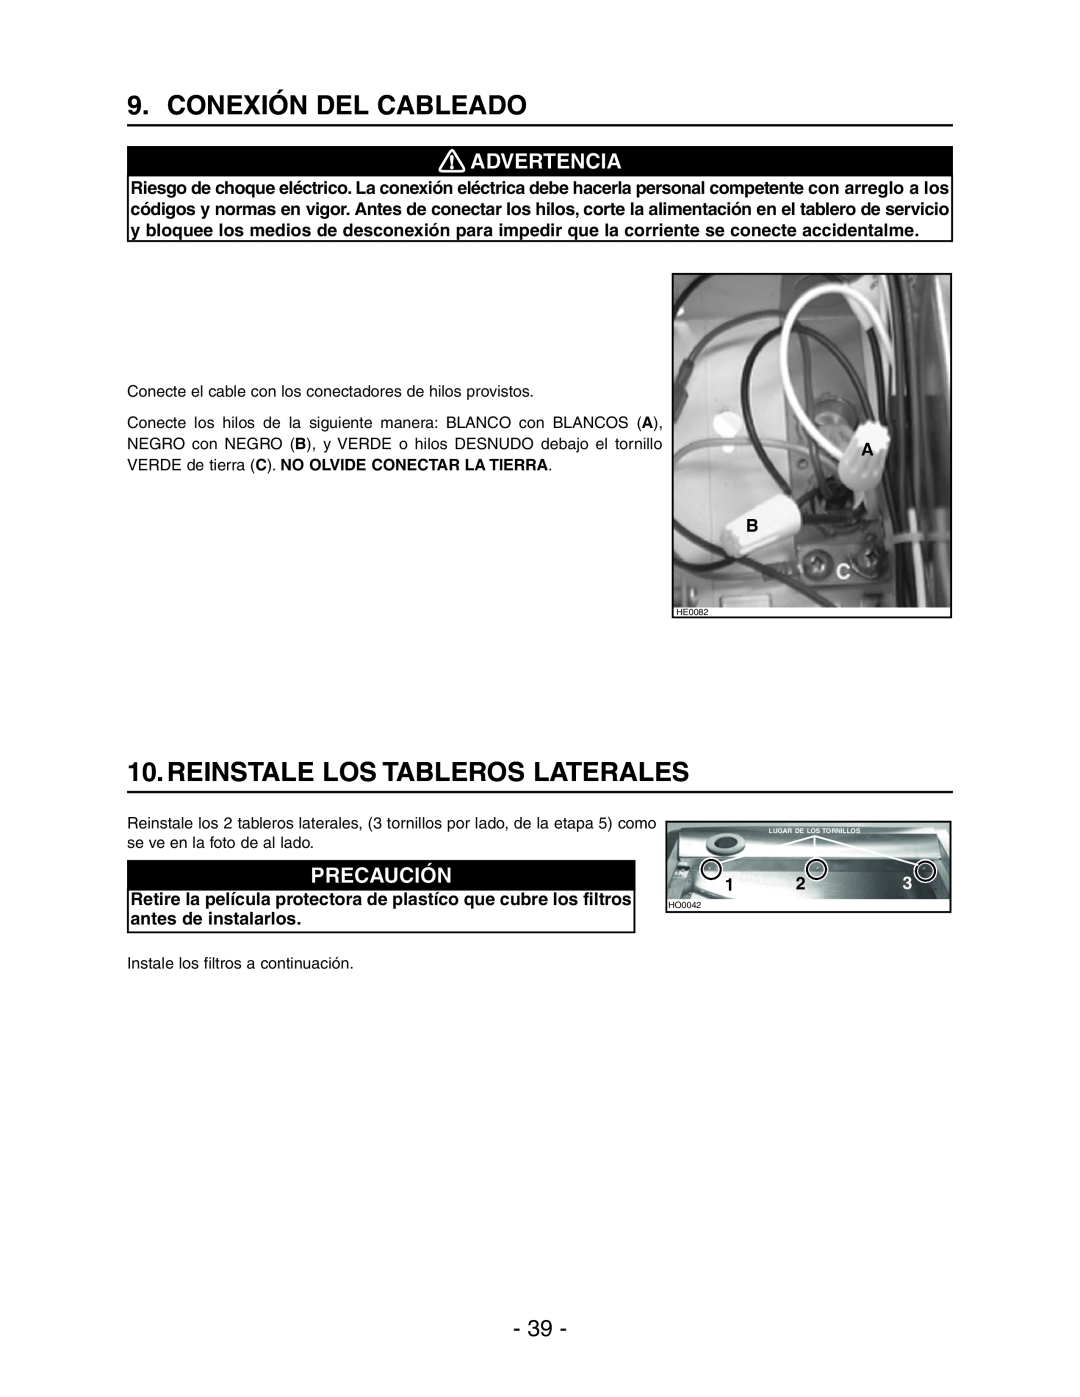 Broan Model E662 installation instructions Conexión Del Cableado, Reinstale Los Tableros Laterales, Advertencia, Precaución 